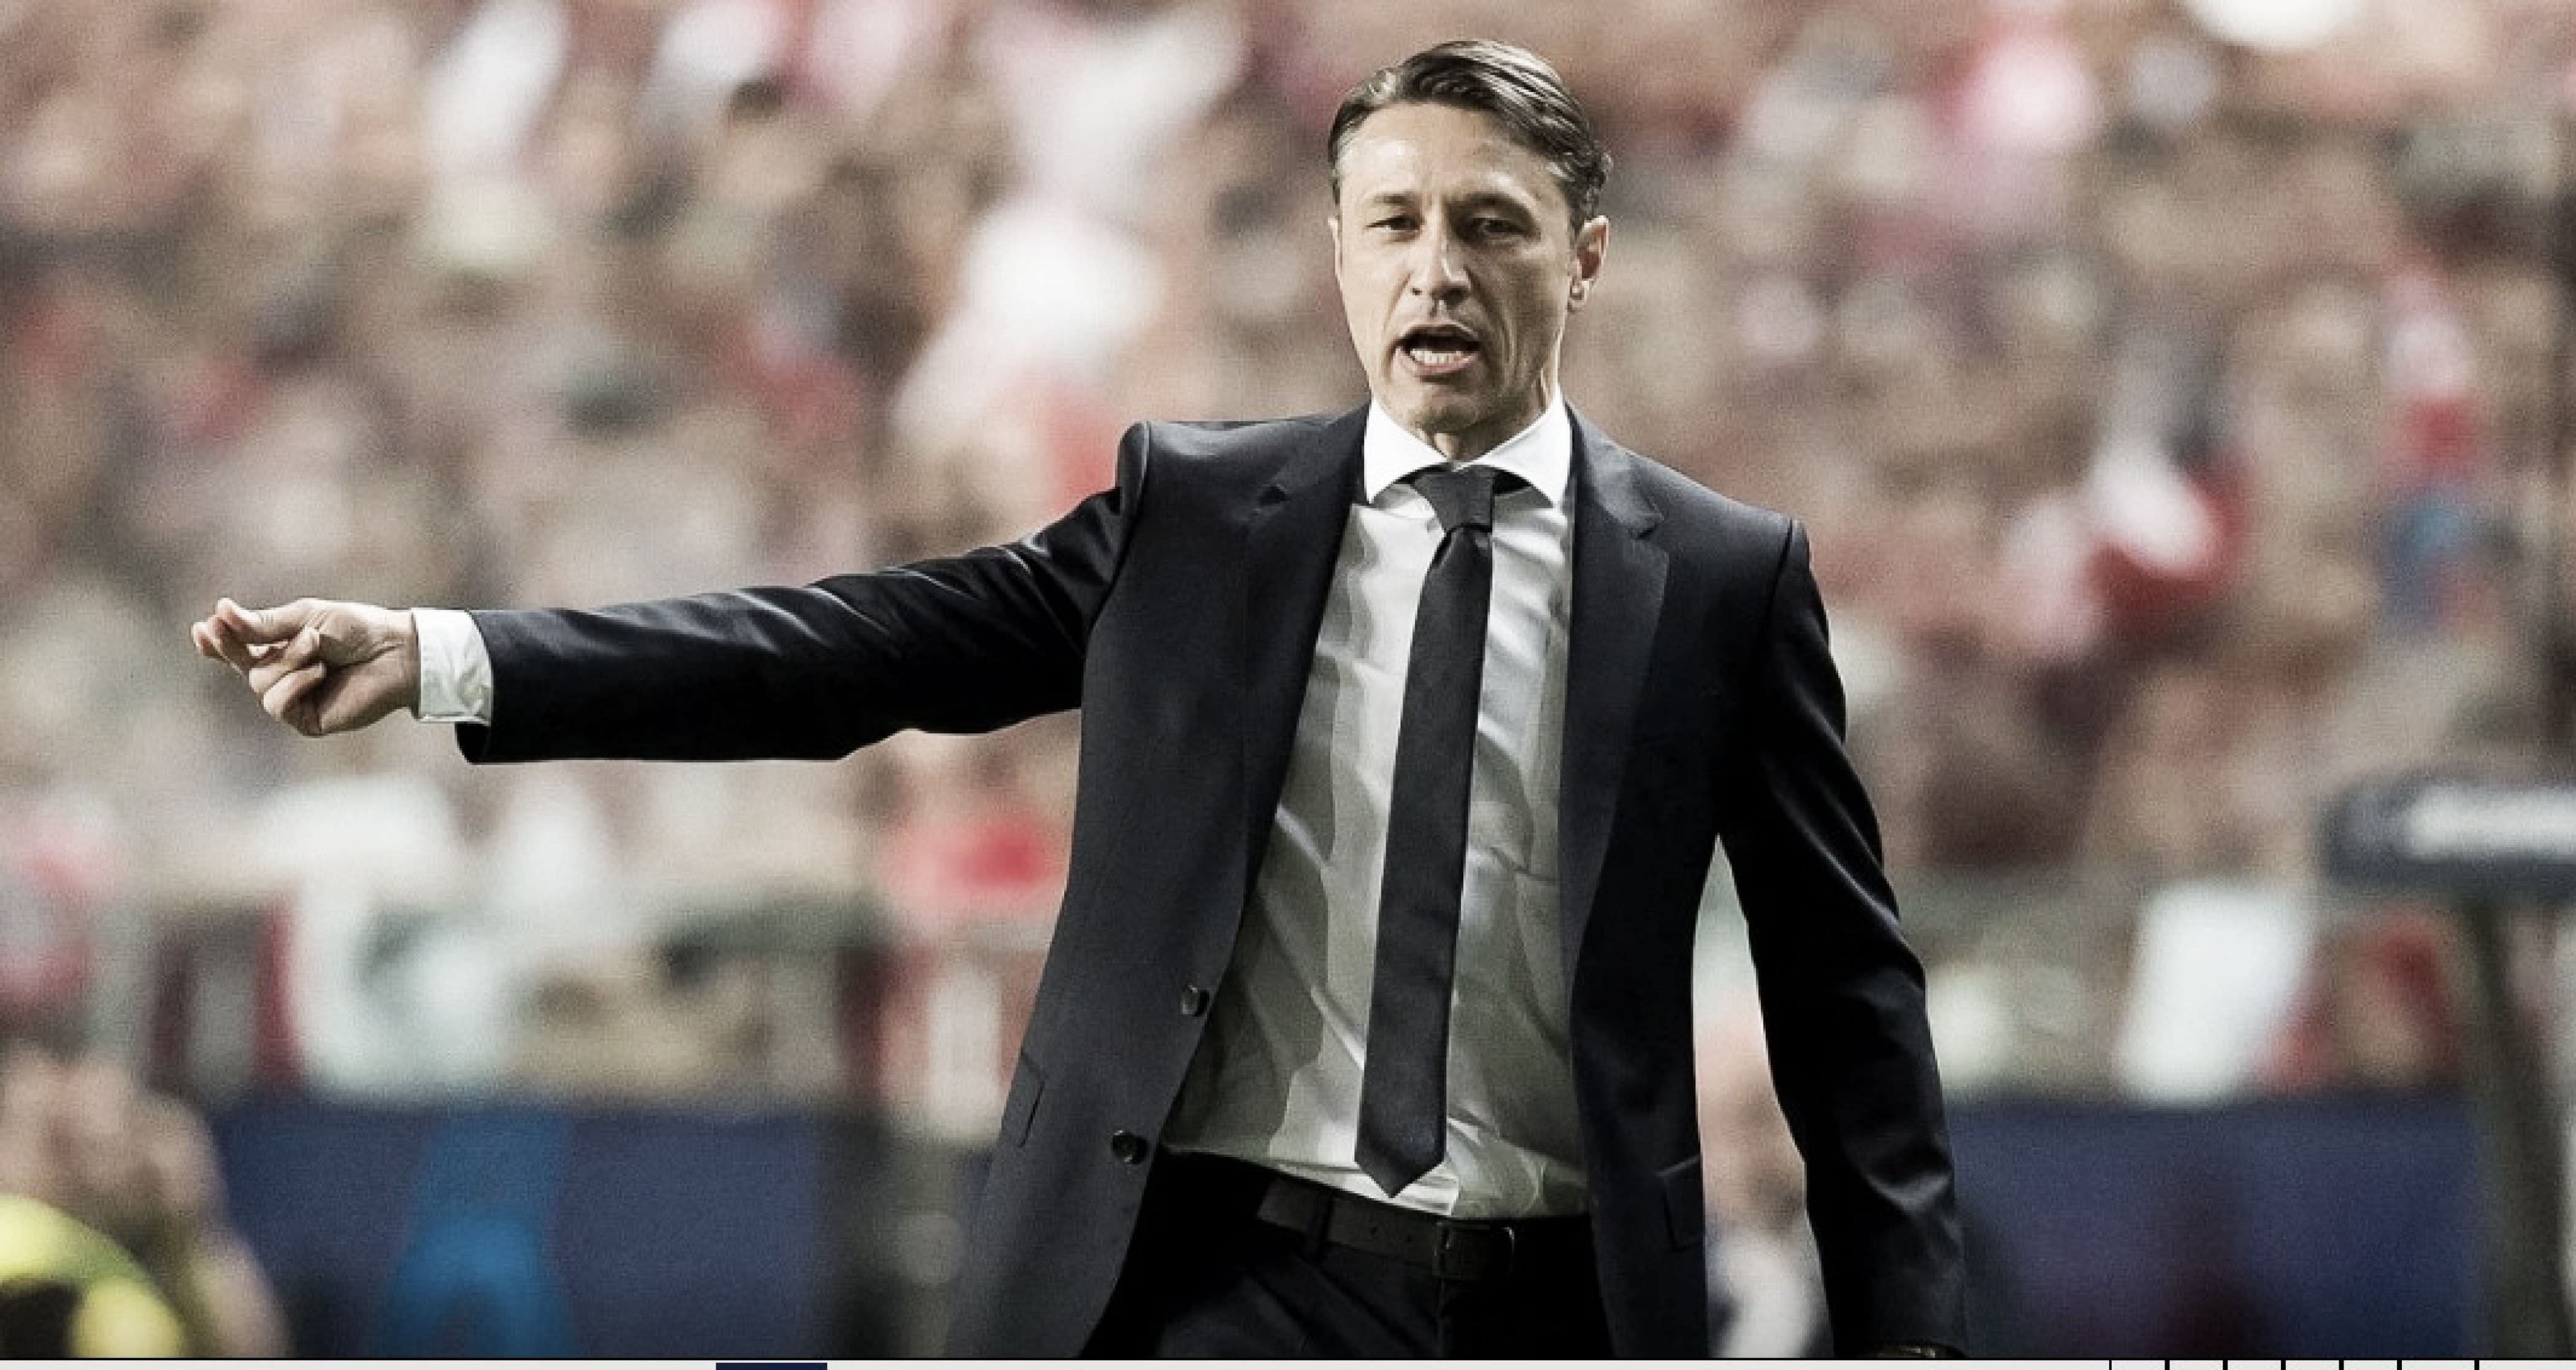 Kovac exalta evolução do Bayern e prevê melhor campanha